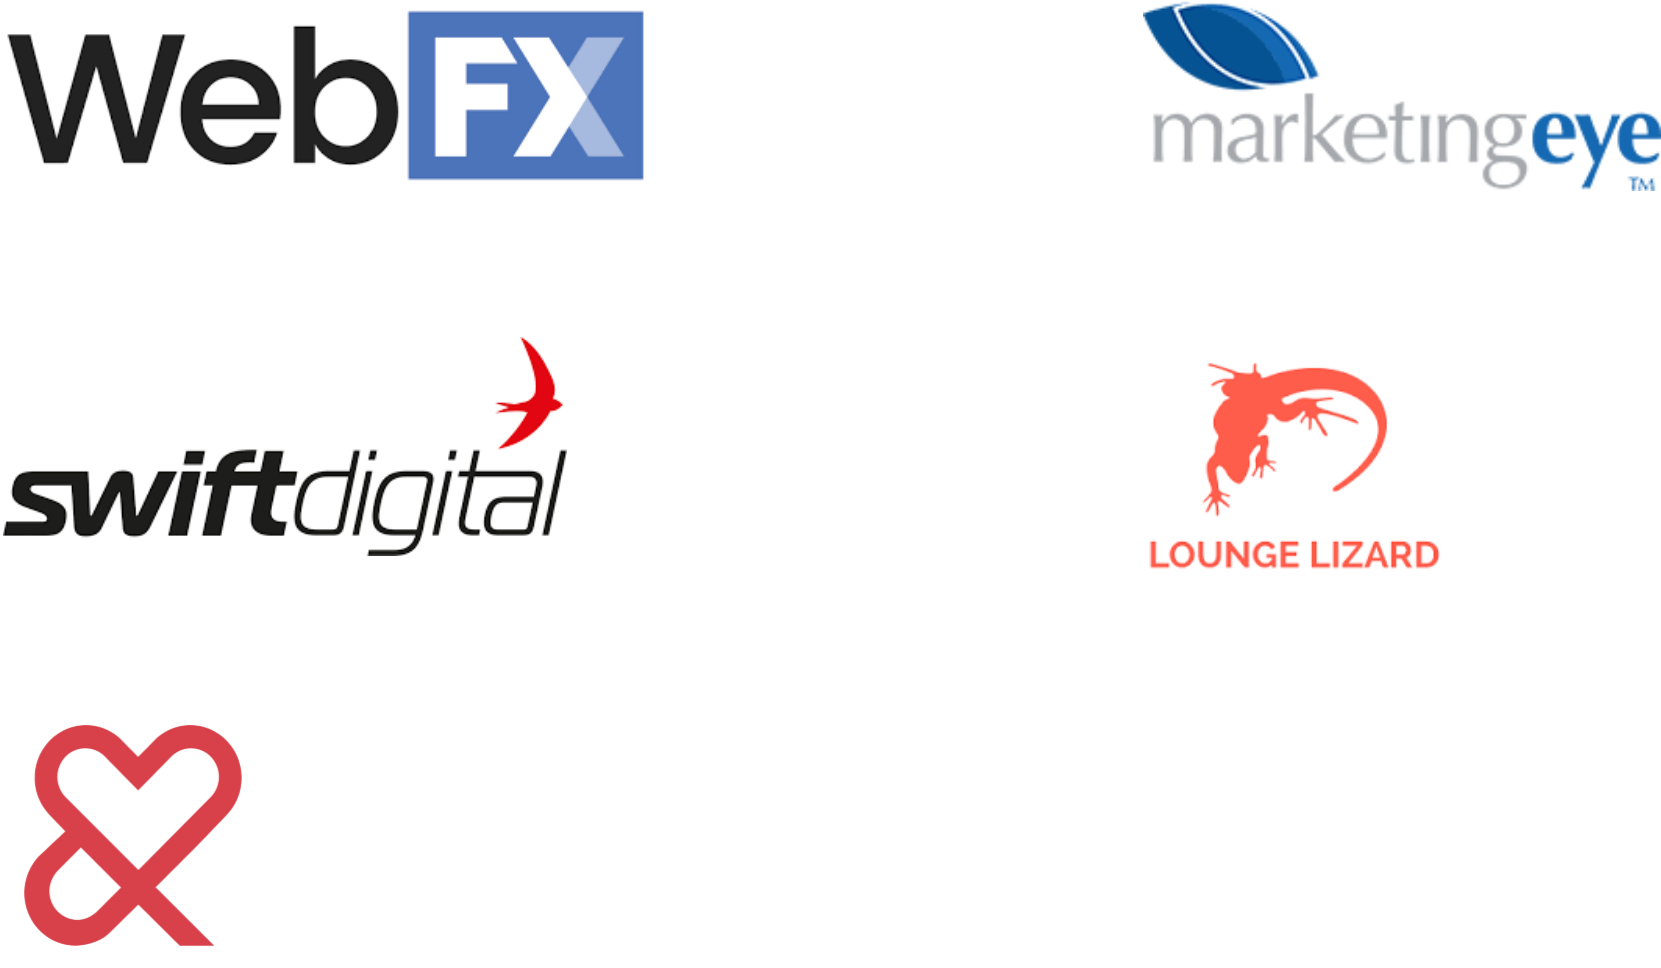 オーストラリアのデジタルマーケティングソフトウェア市場の主要企業